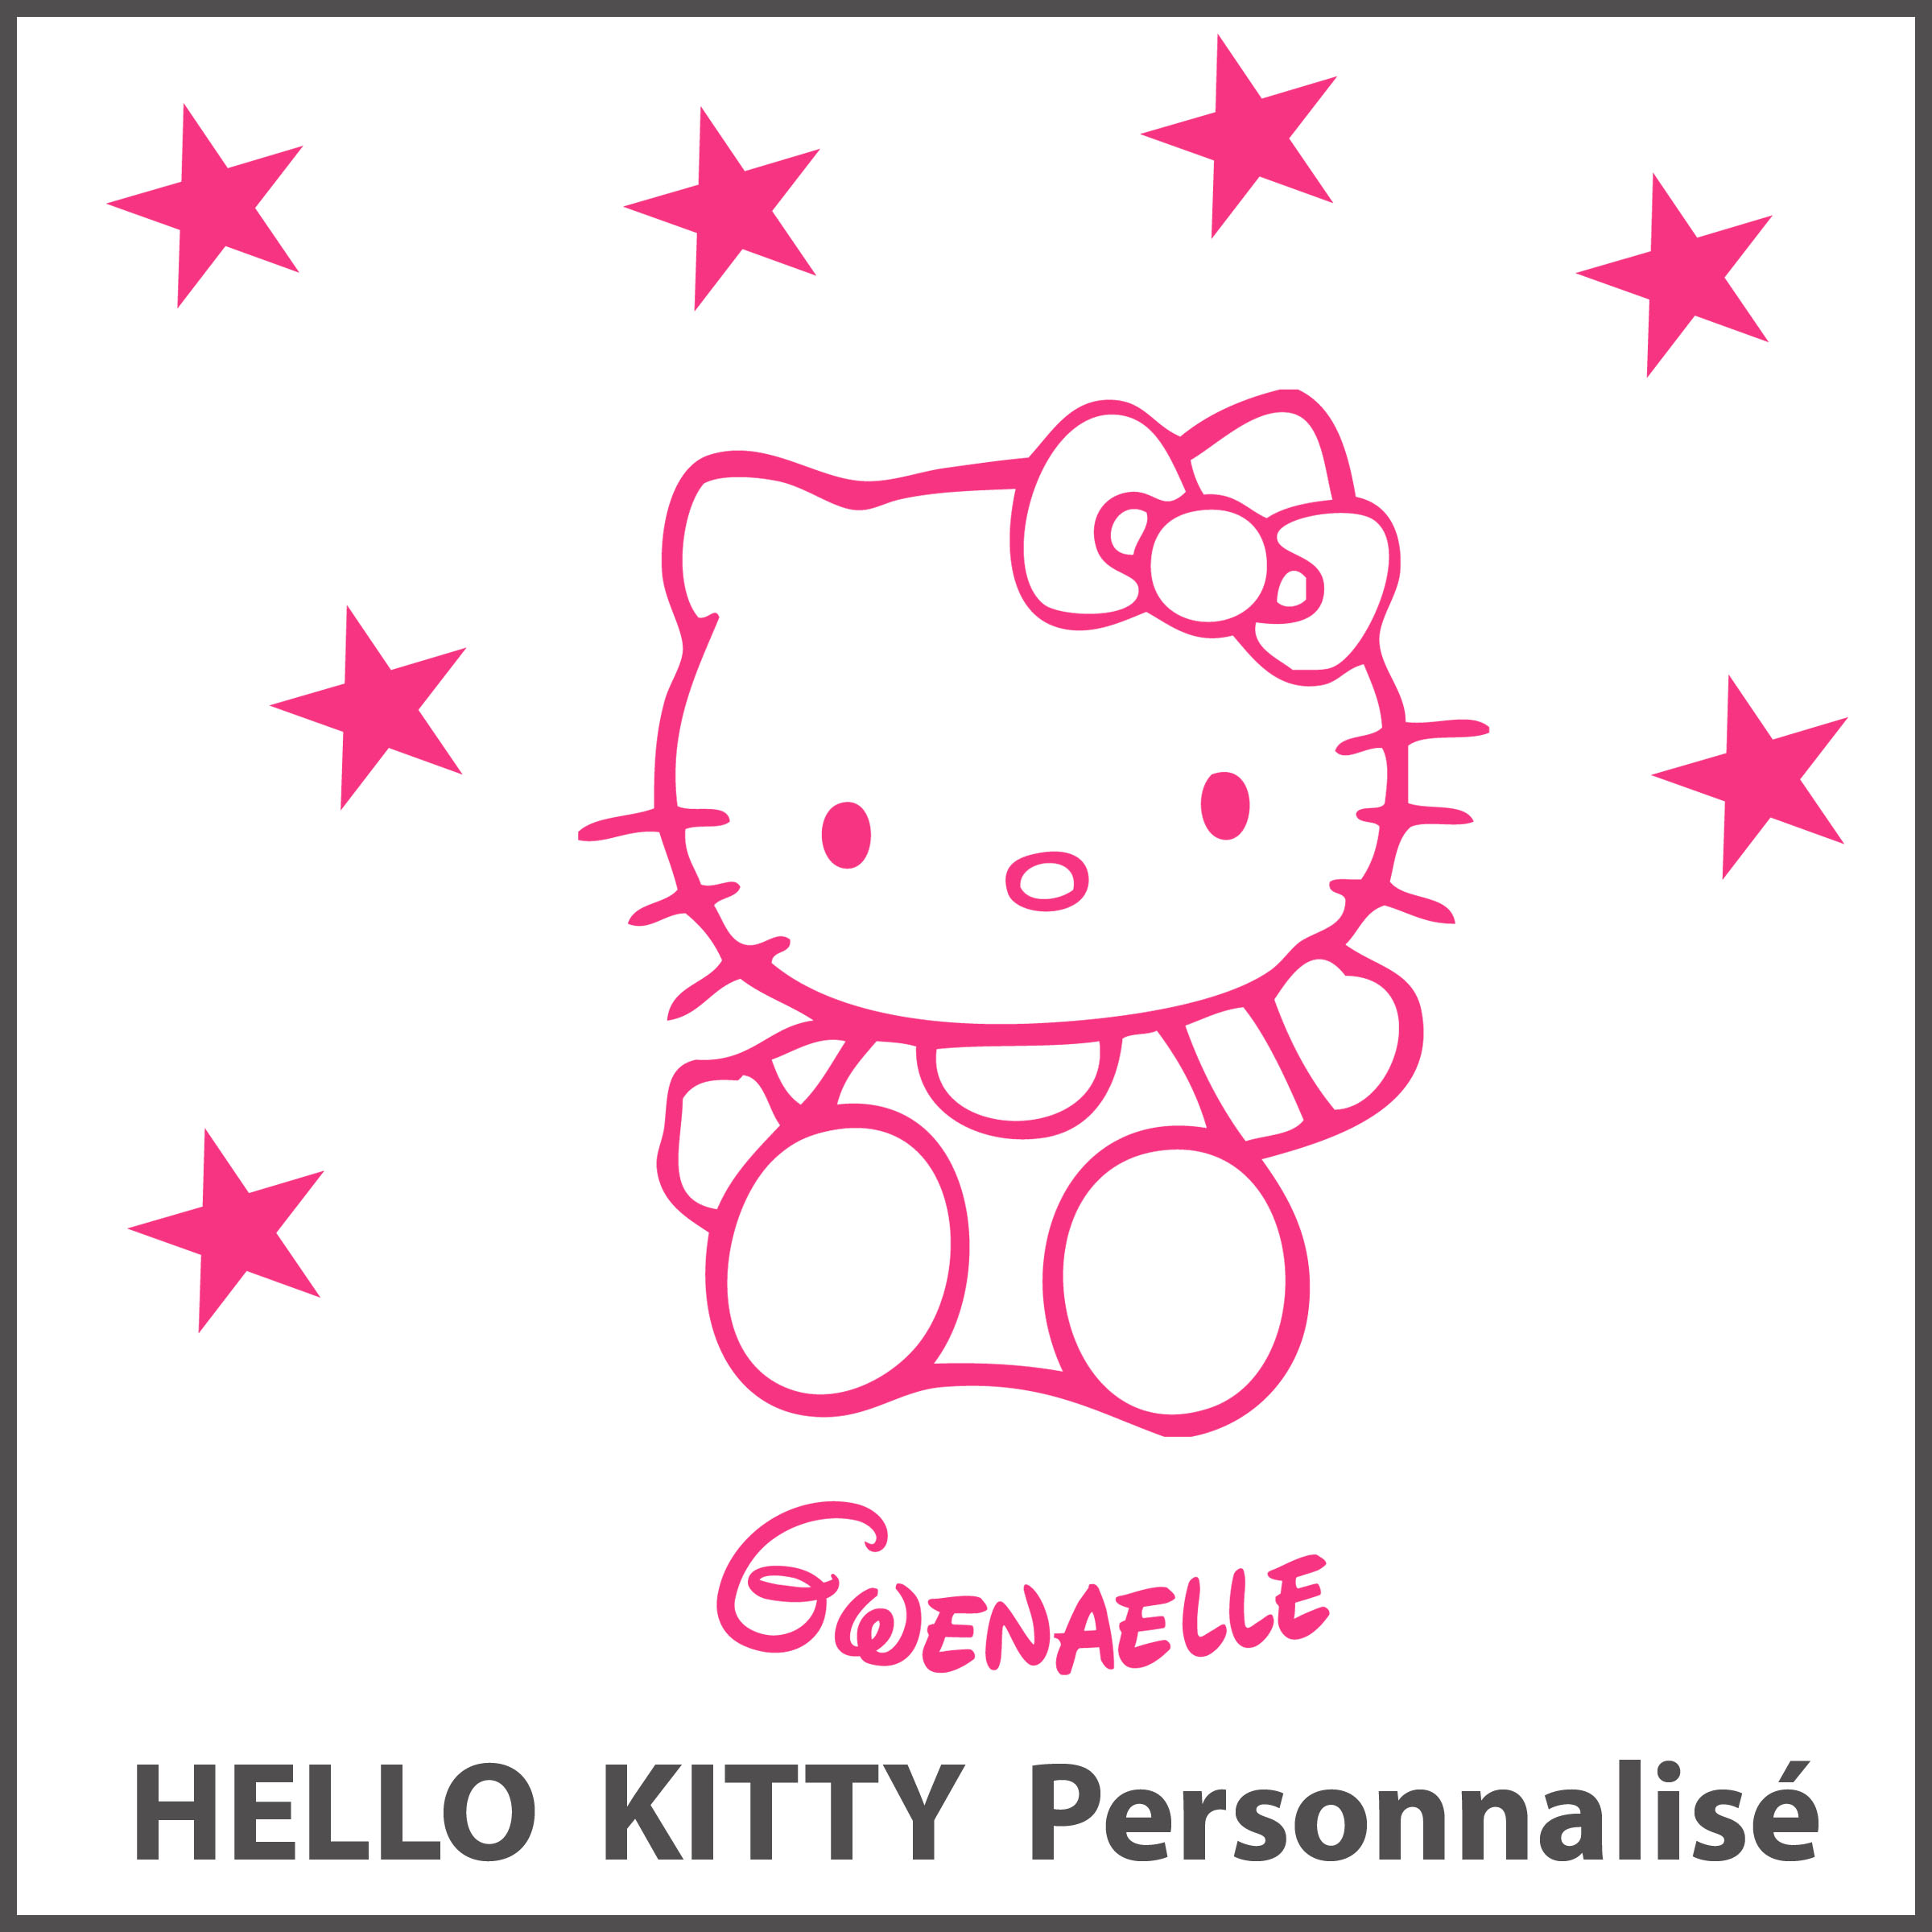 Stickers Hello Kitty Personnalisé Prénom